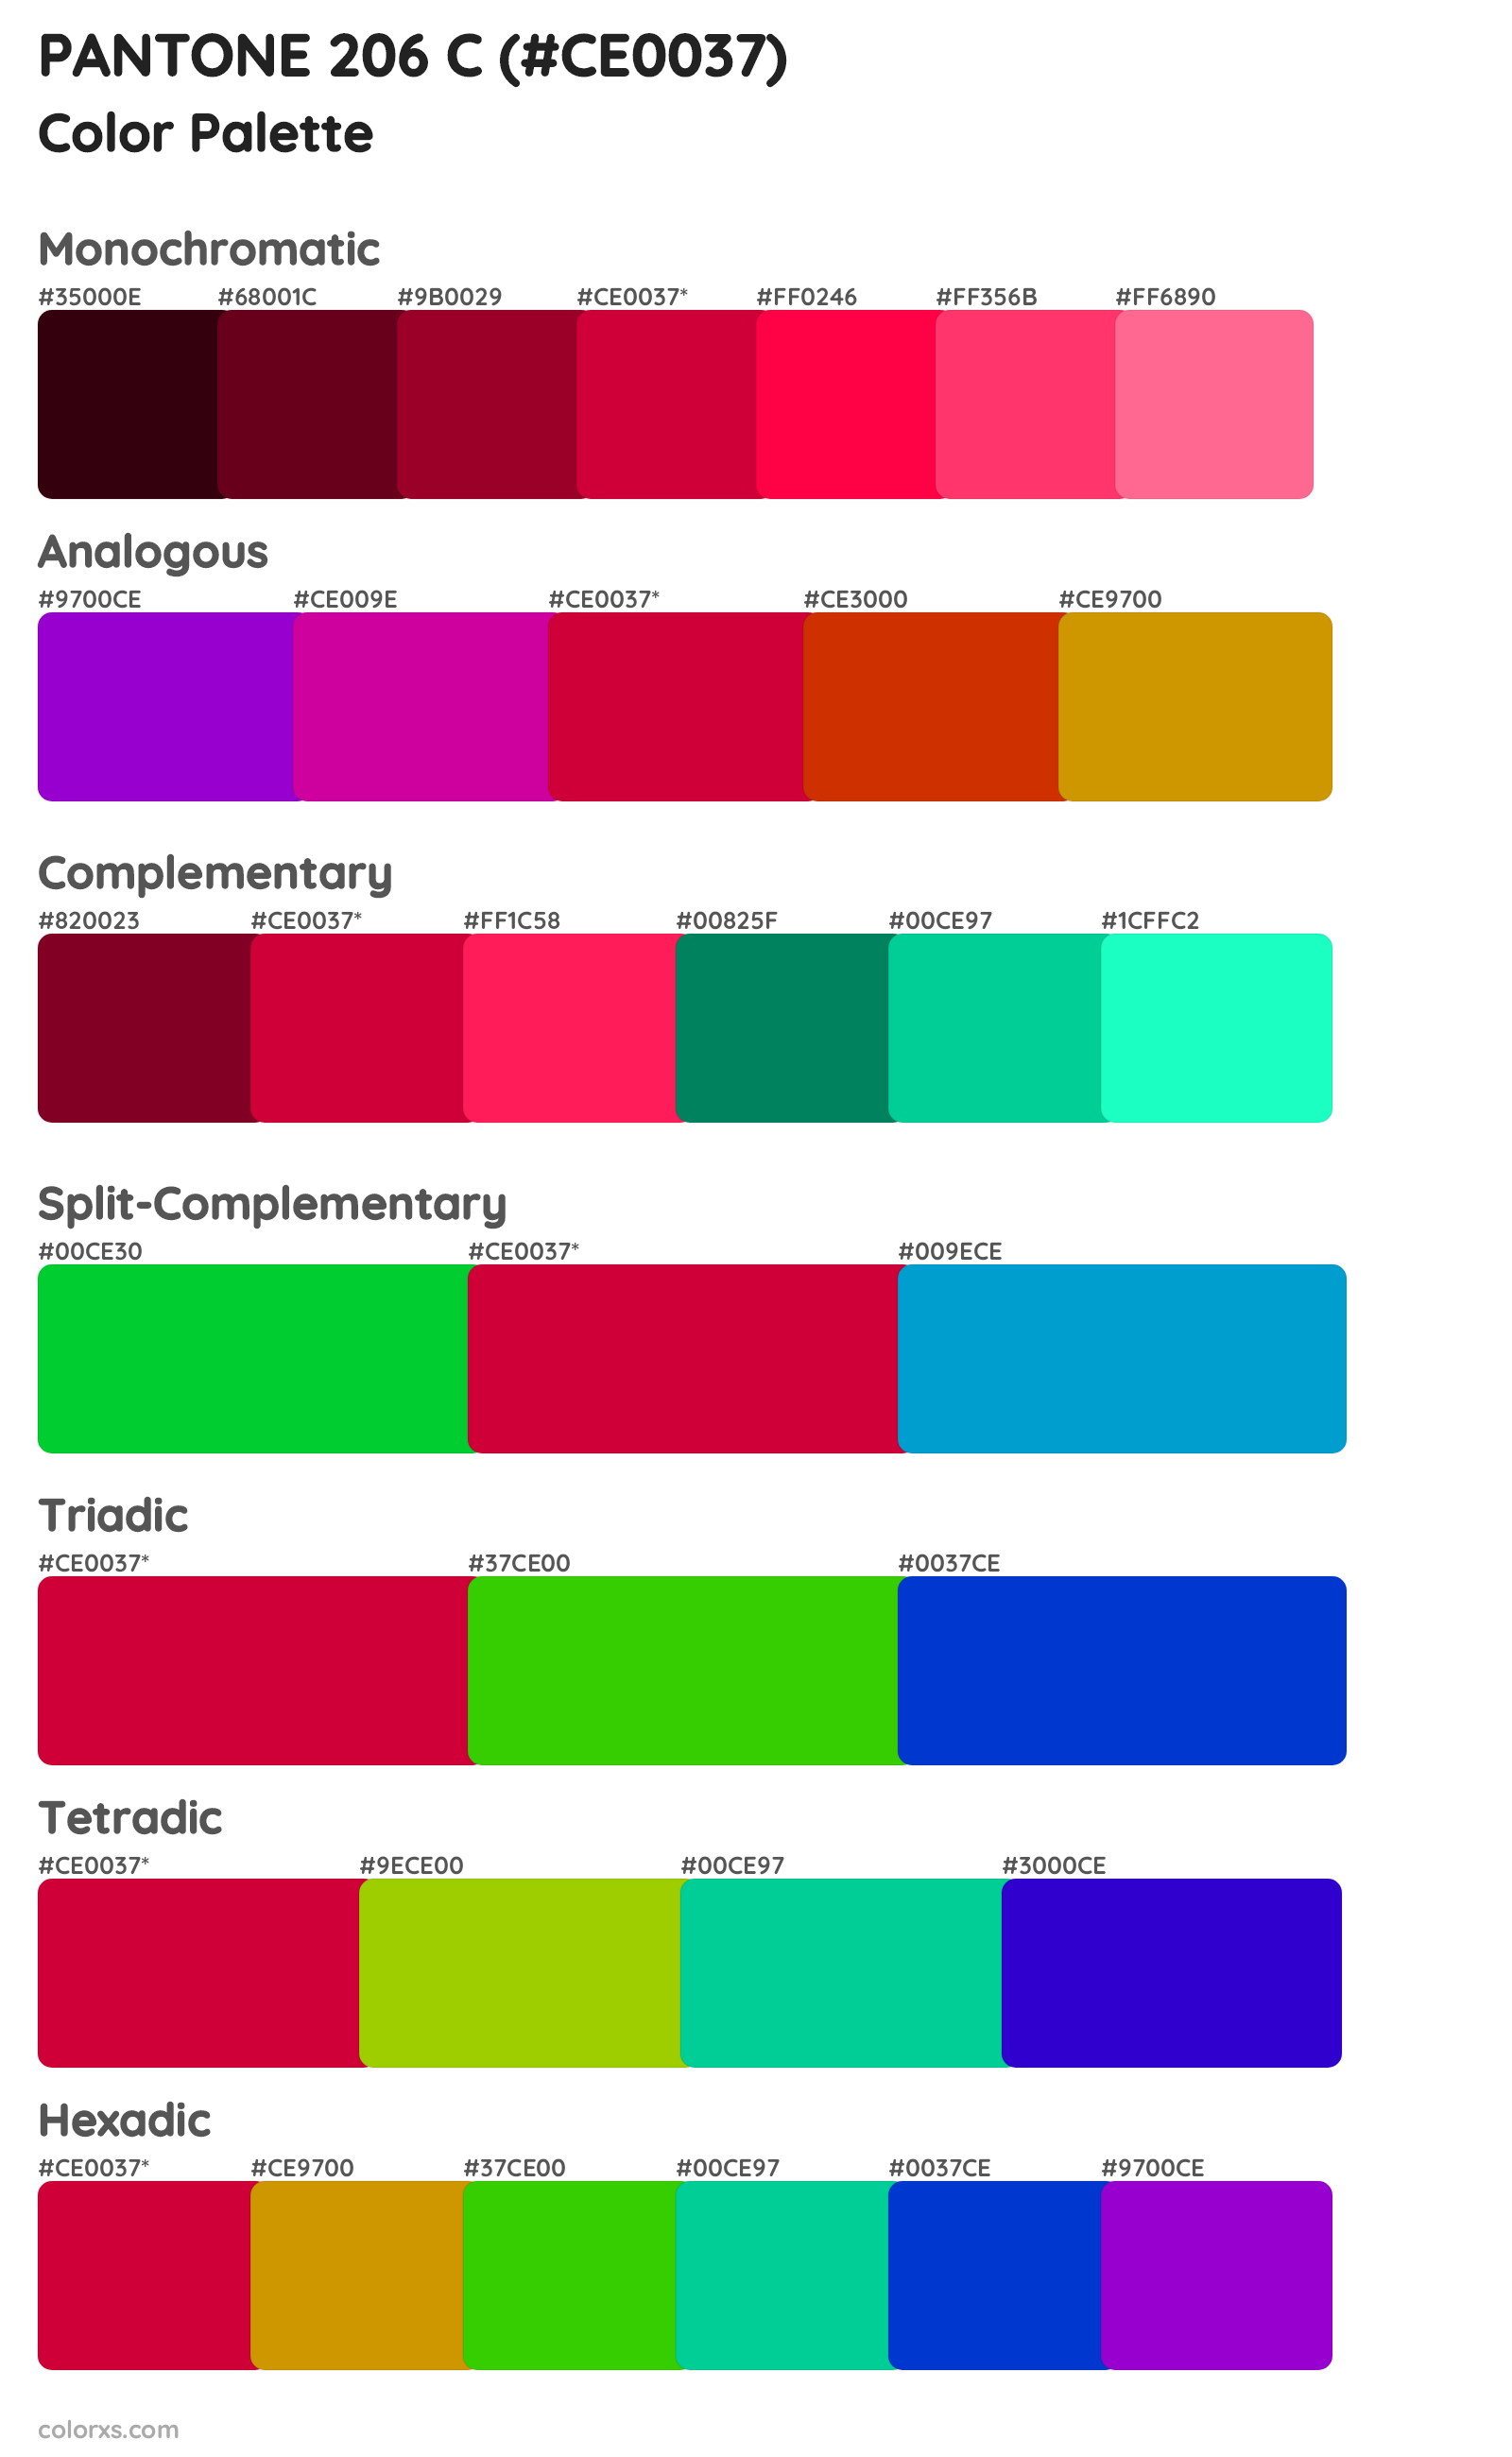 PANTONE 206 C Color Scheme Palettes